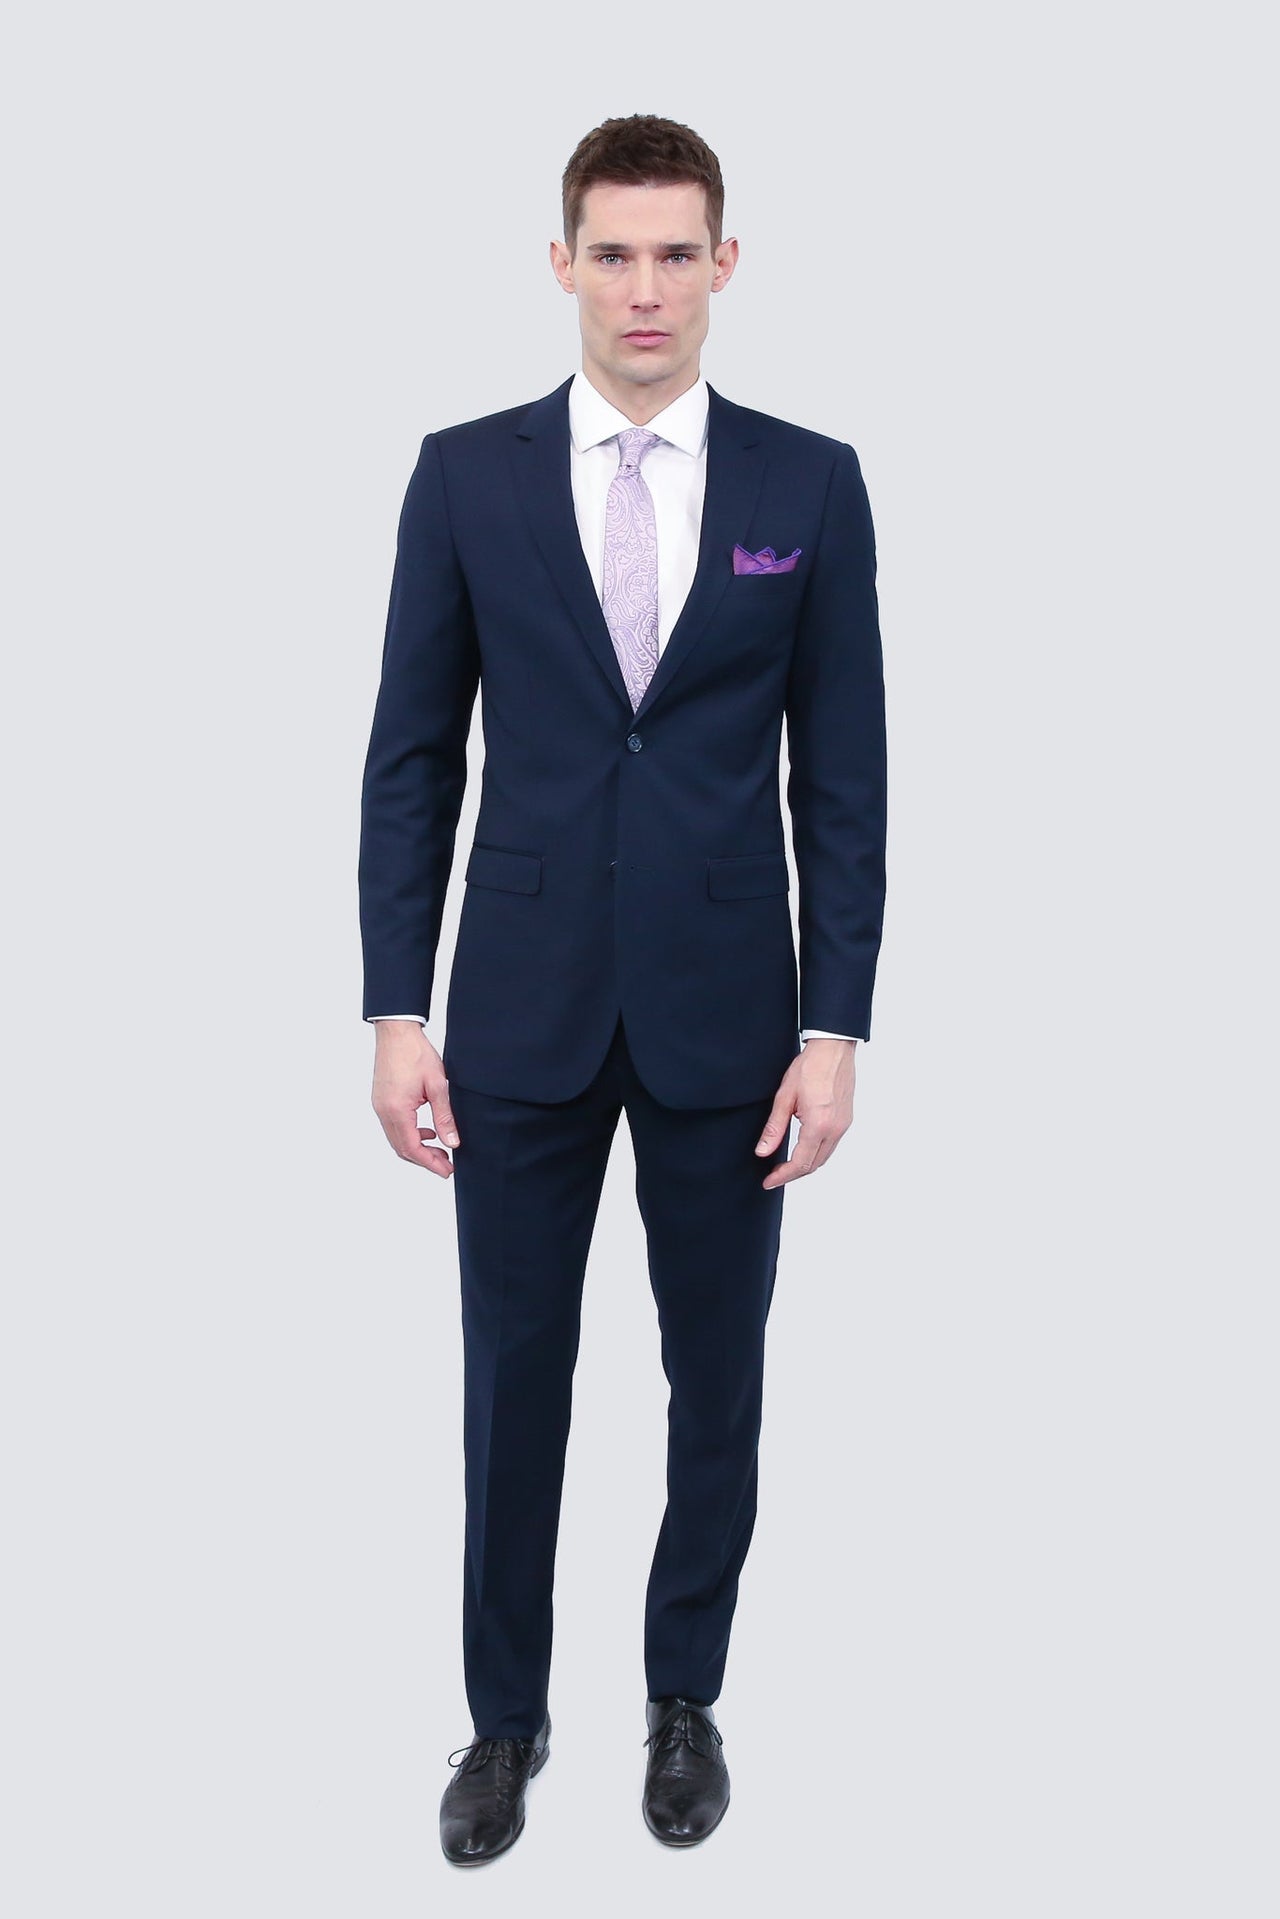 Tailor's Stretch Blend Suit | Navy Blue Modern or Slim Fit - Tomasso Black